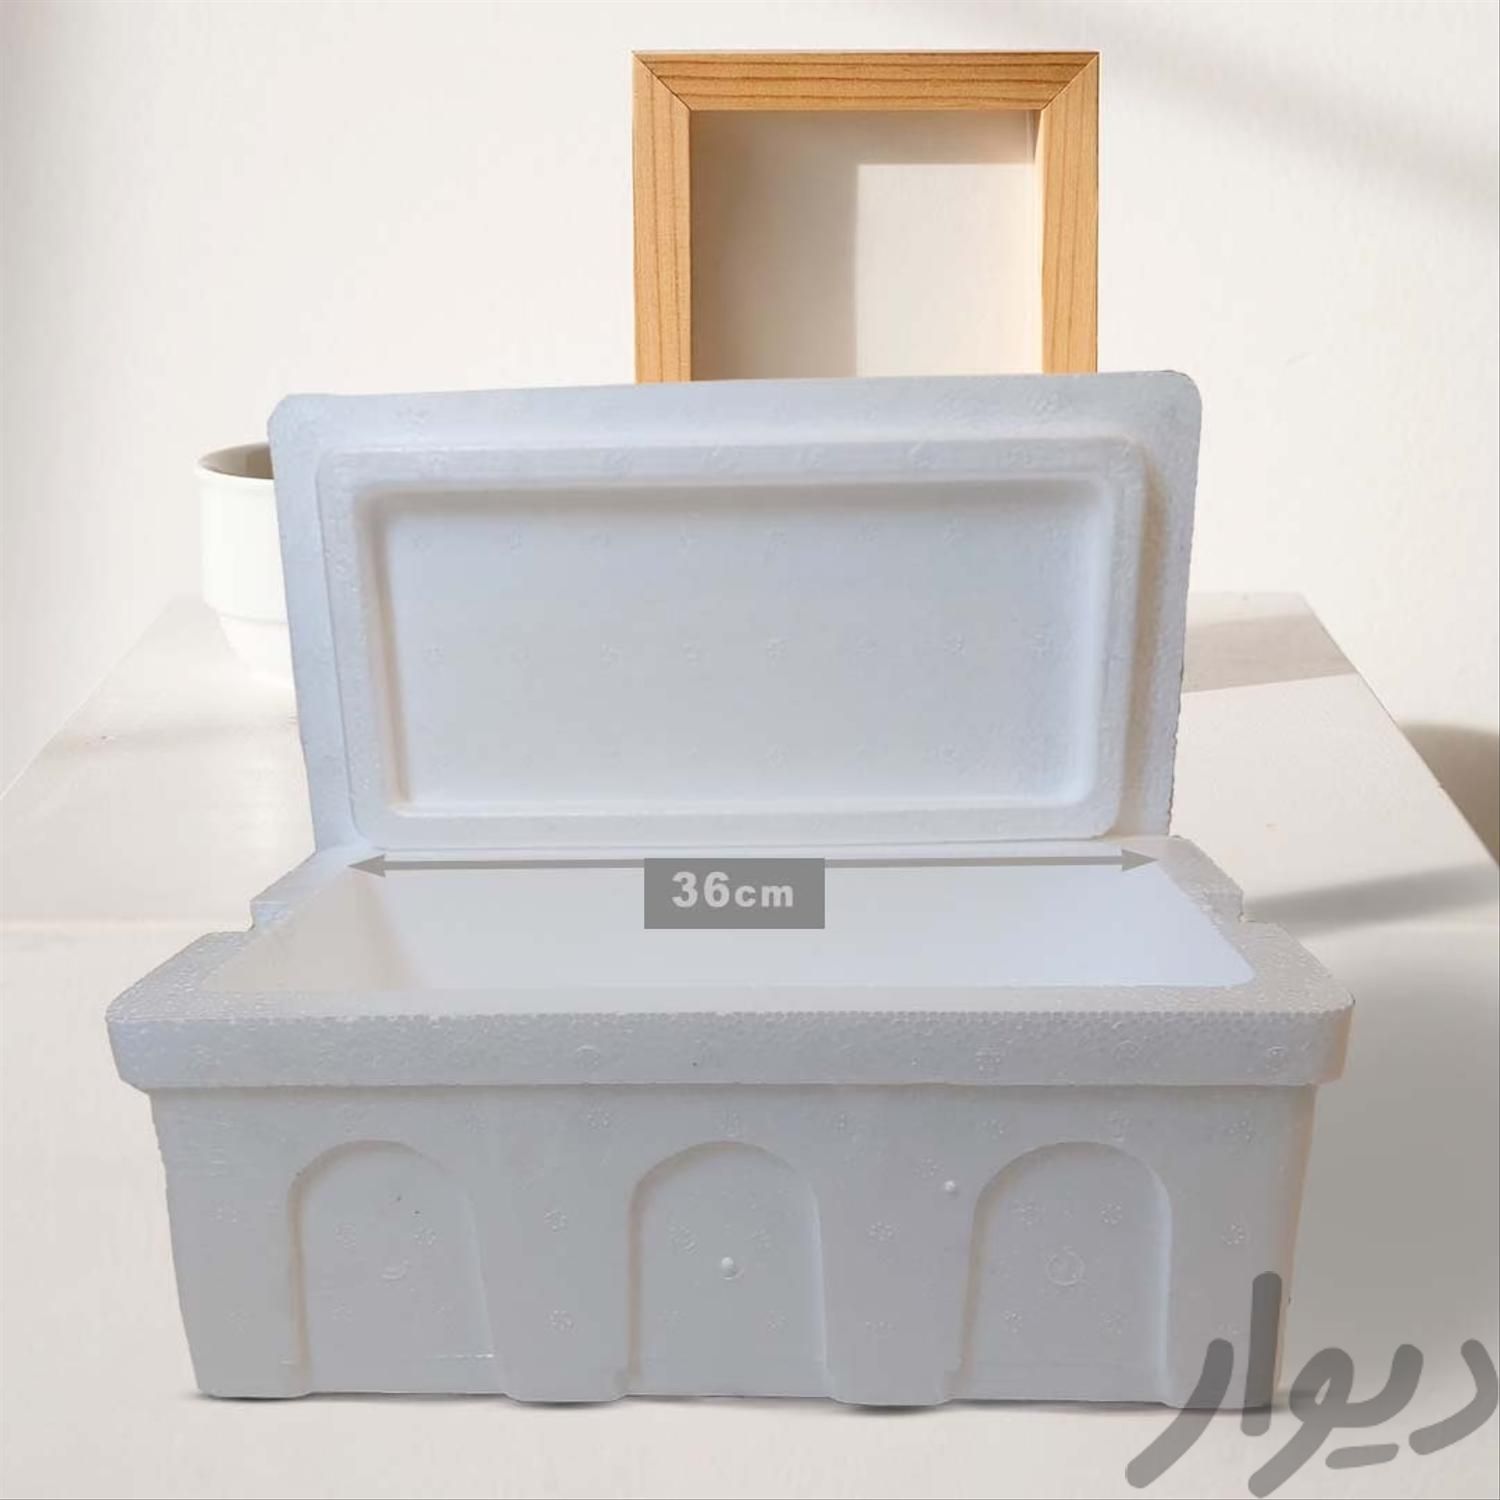 یخدان یونولیتی icebox-10 کولباکس یونولیت|ظروف نگهدارنده، پلاستیکی و یکبارمصرف|تهران, بهار|دیوار